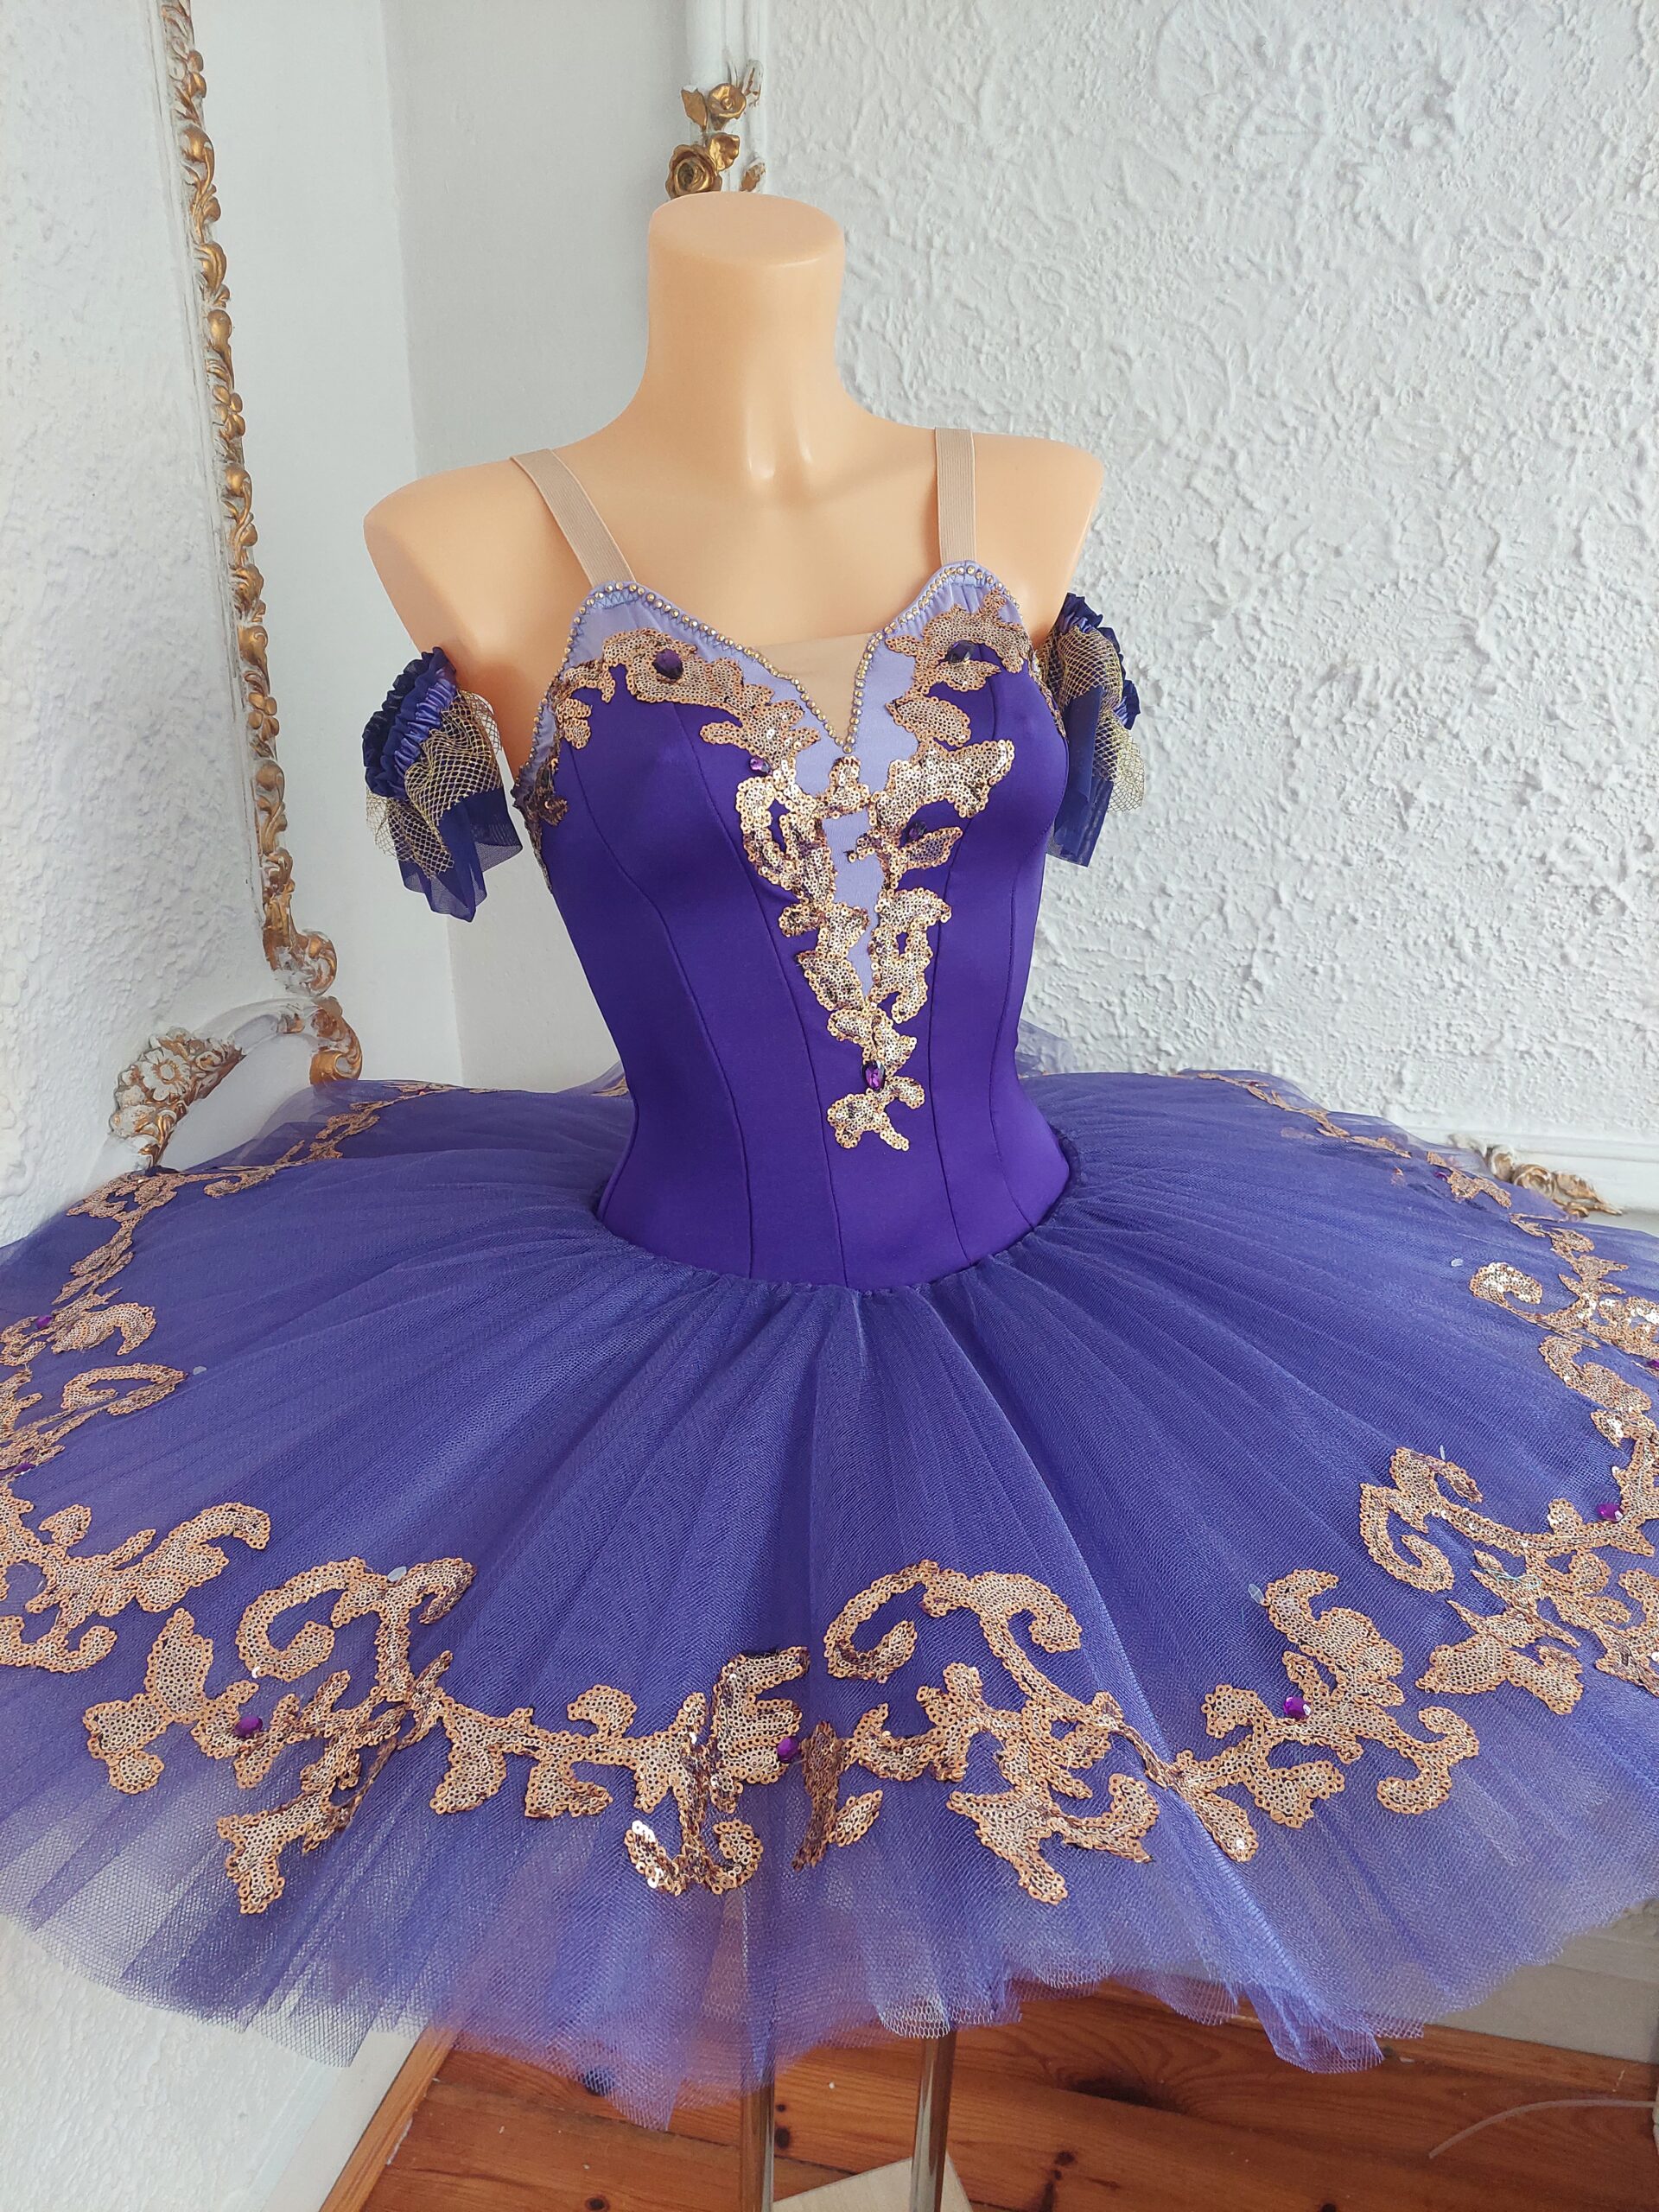 tutu szycie paczka baletowa klasyczna Raymonda Medora Lilac Fairy ballet costumes stroje baletowe